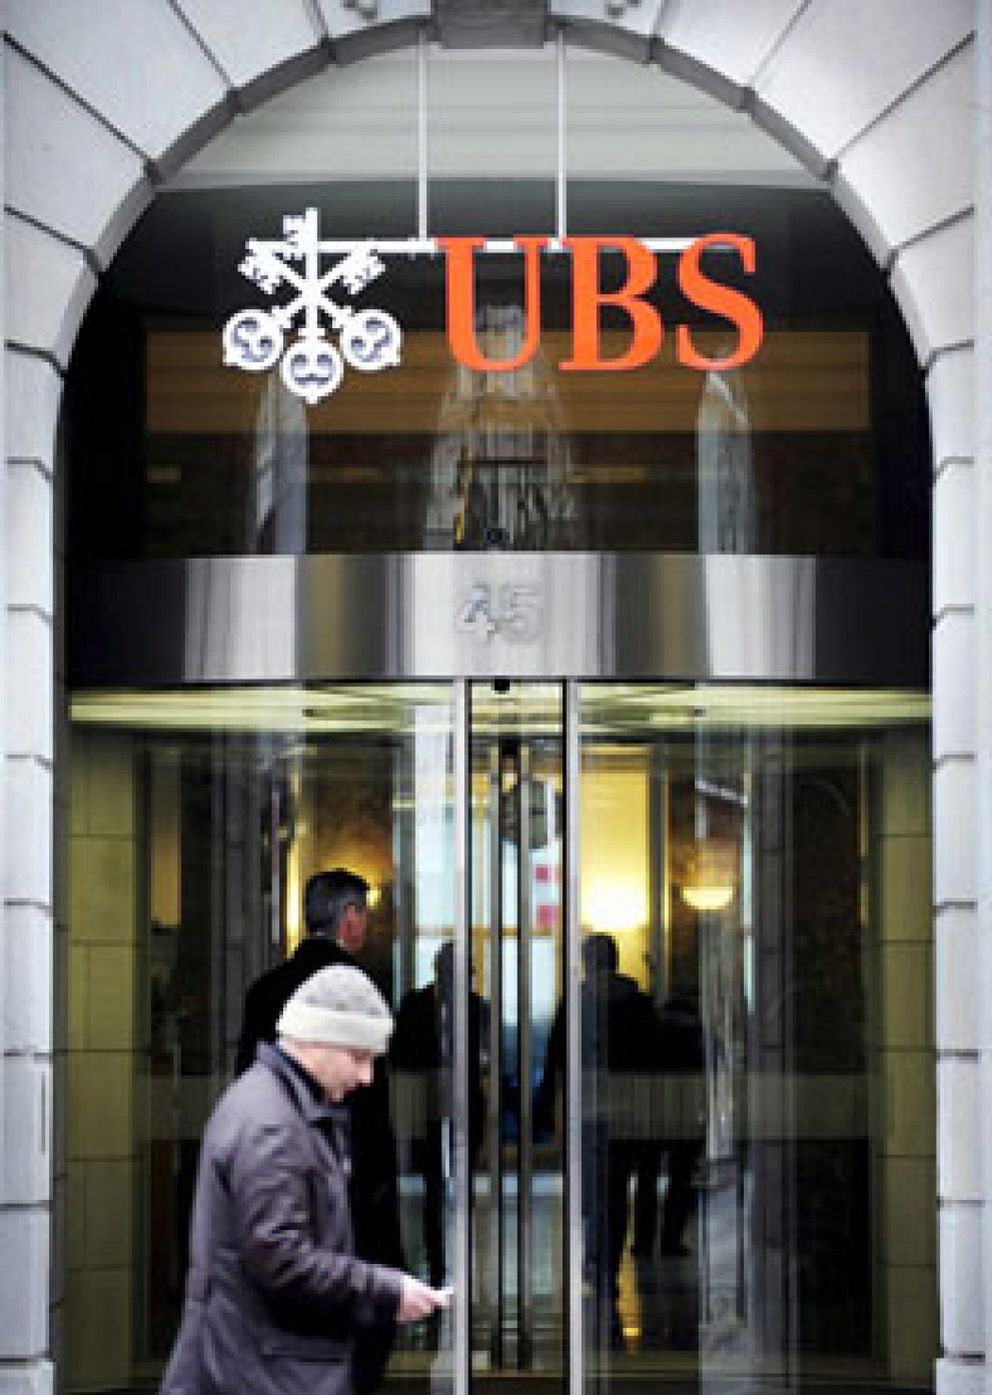 Foto: Sánchez Asiaín deja la presidencia de UBS para incorporarse a Nomura